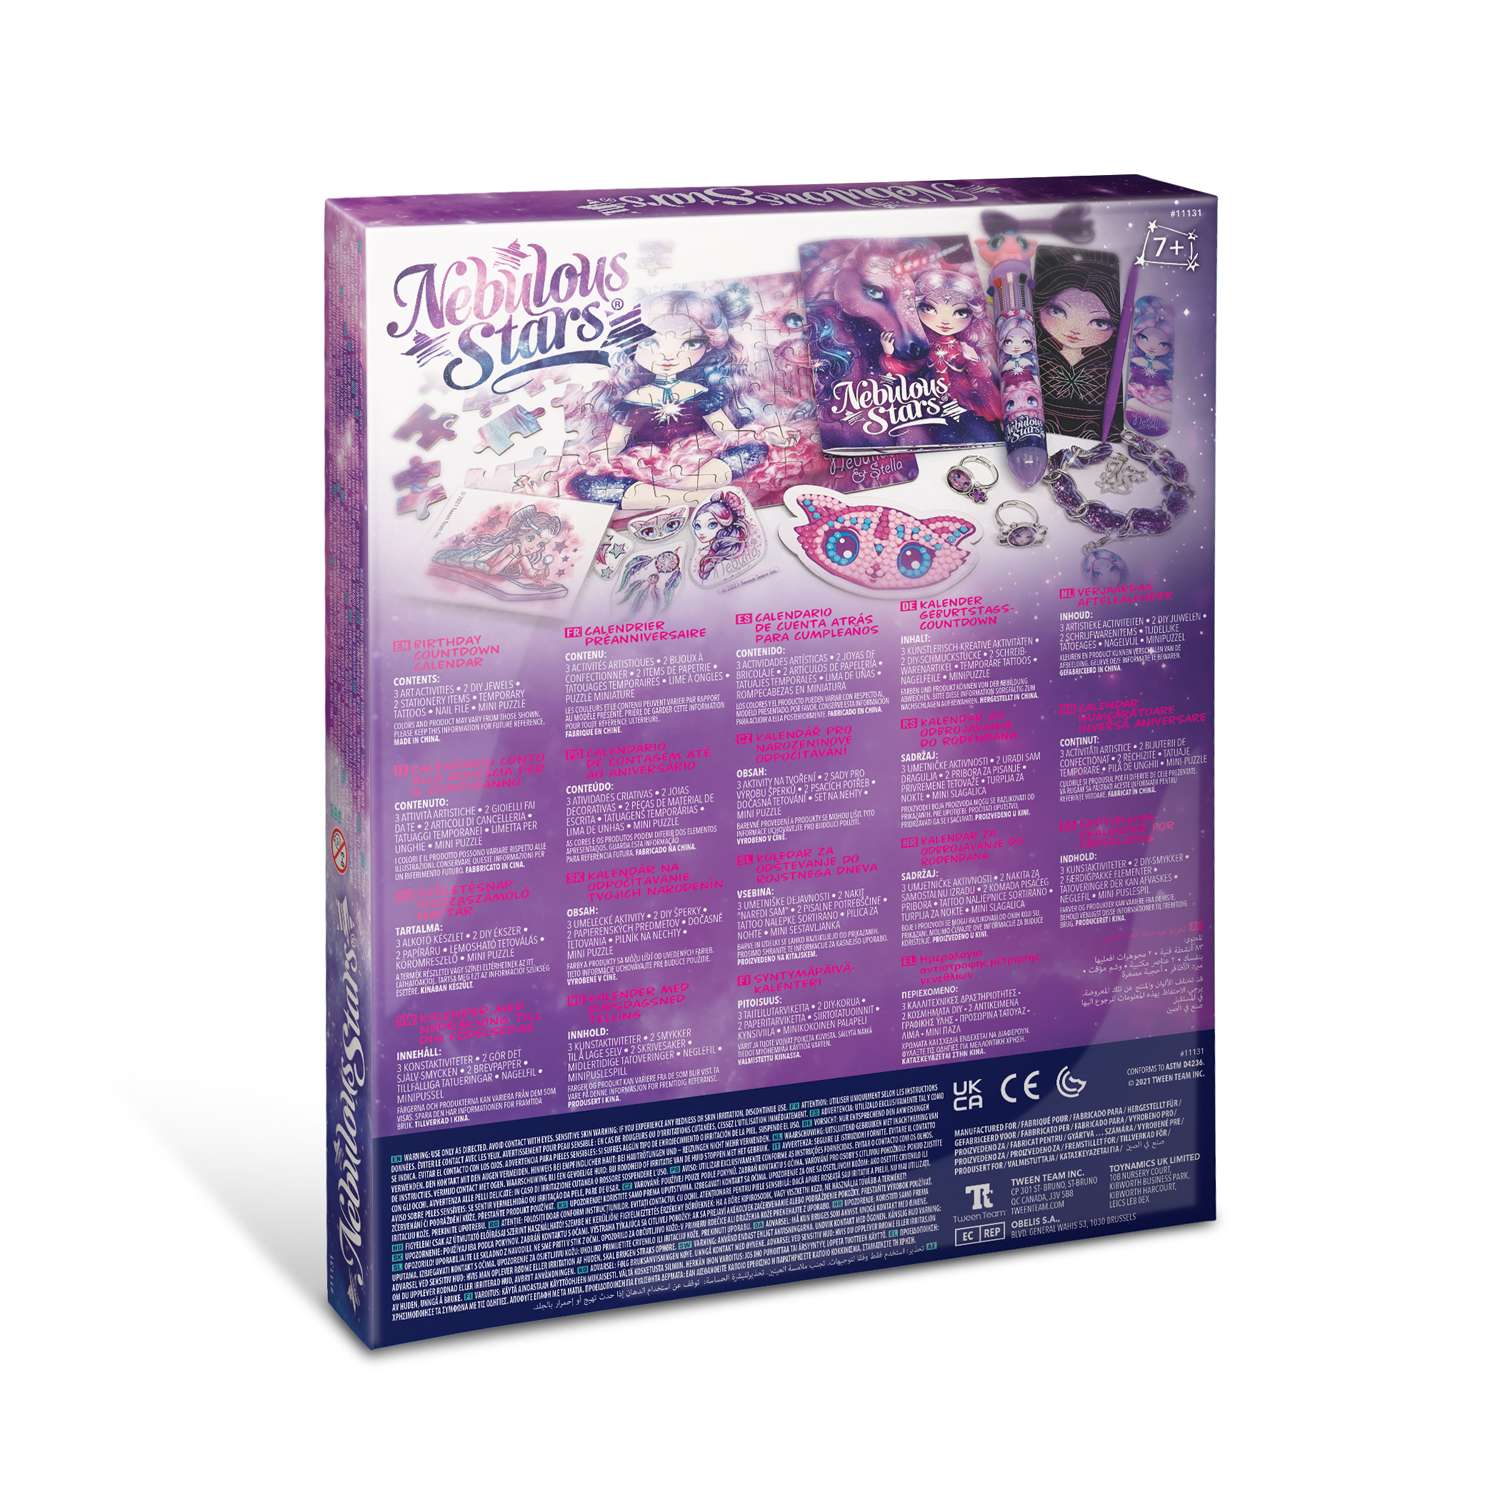 Подарочный набор Nebulous Stars для девочек ко Дню рождения обратный календарь 10 подарков 11131_NSDA - фото 6